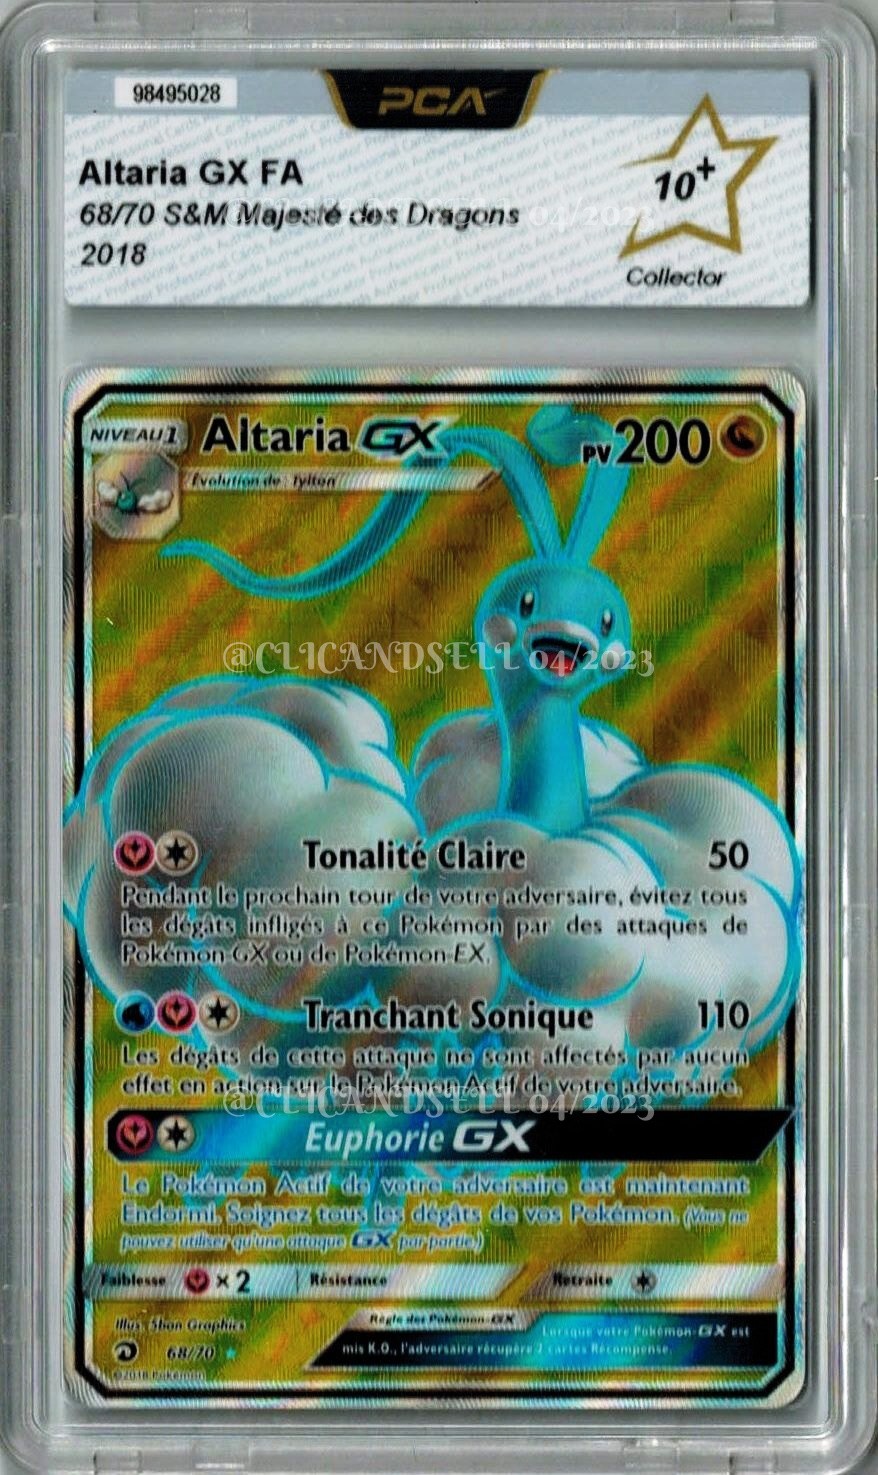 Altaria Gx pv 200 68/70 Majeste des dragons Carte Pokémon Ultra Rare